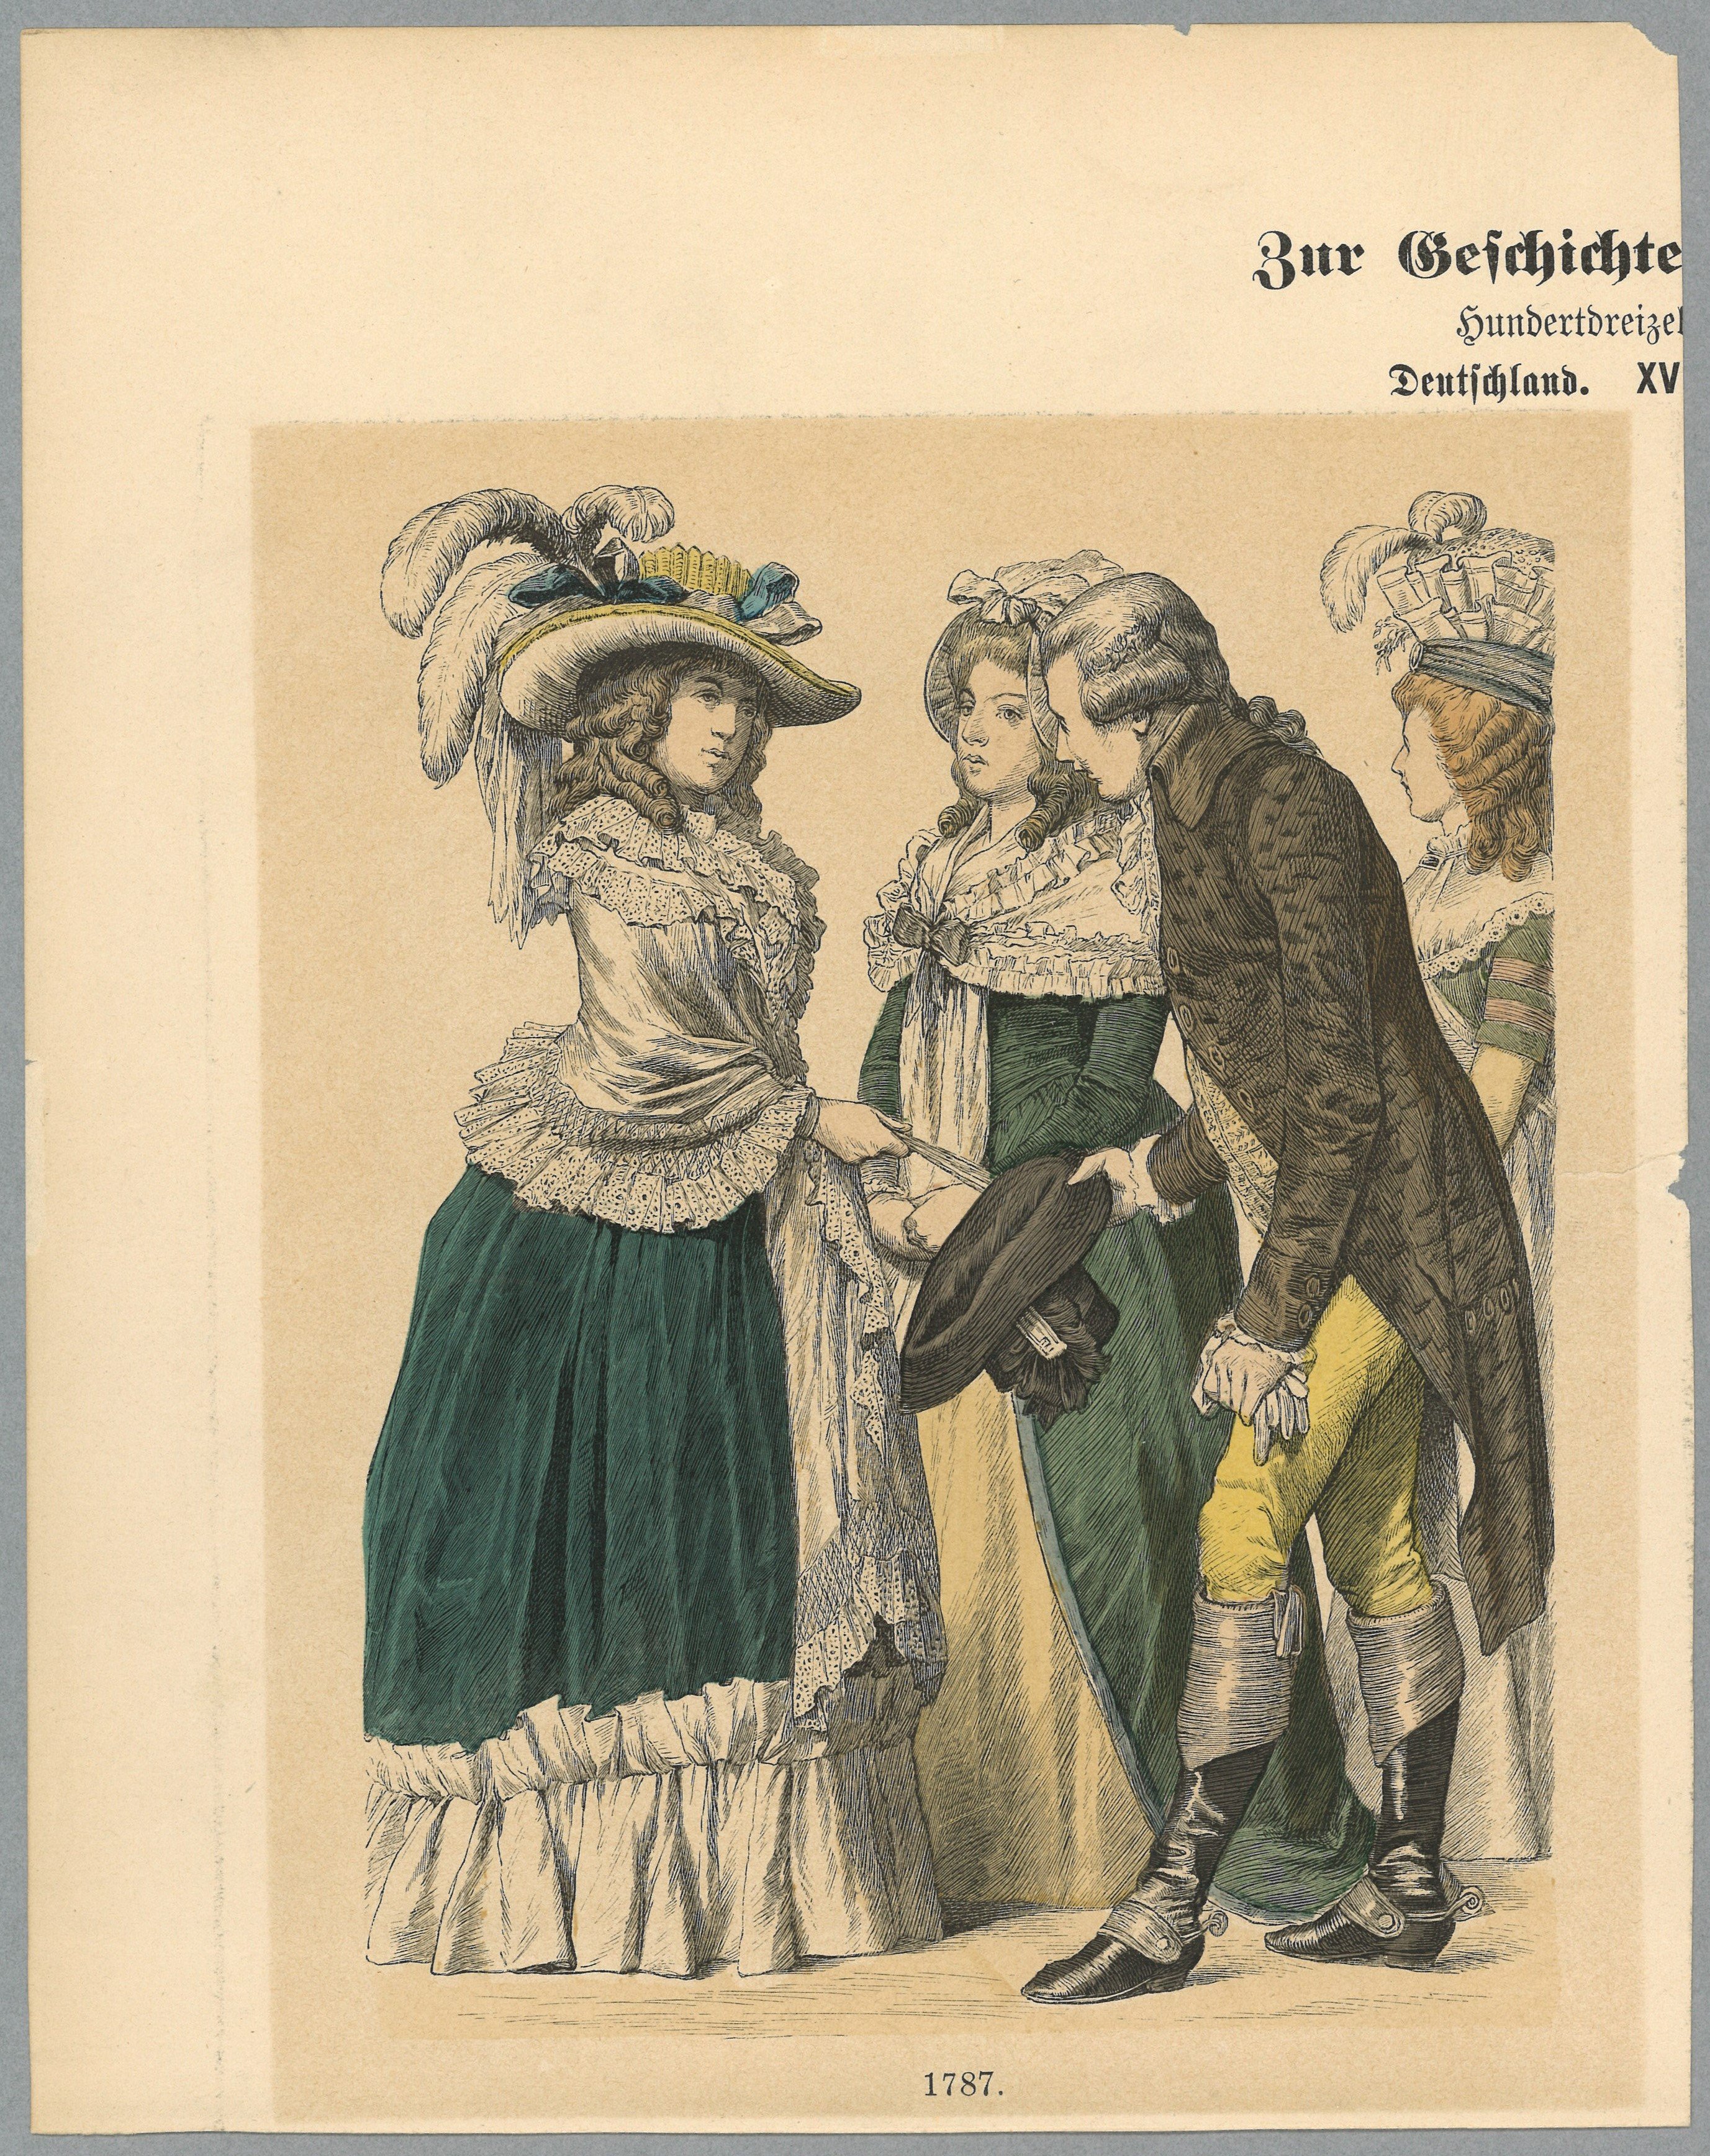 Kostümdarstellungen 1787 (Landesgeschichtliche Vereinigung für die Mark Brandenburg e.V., Archiv CC BY)